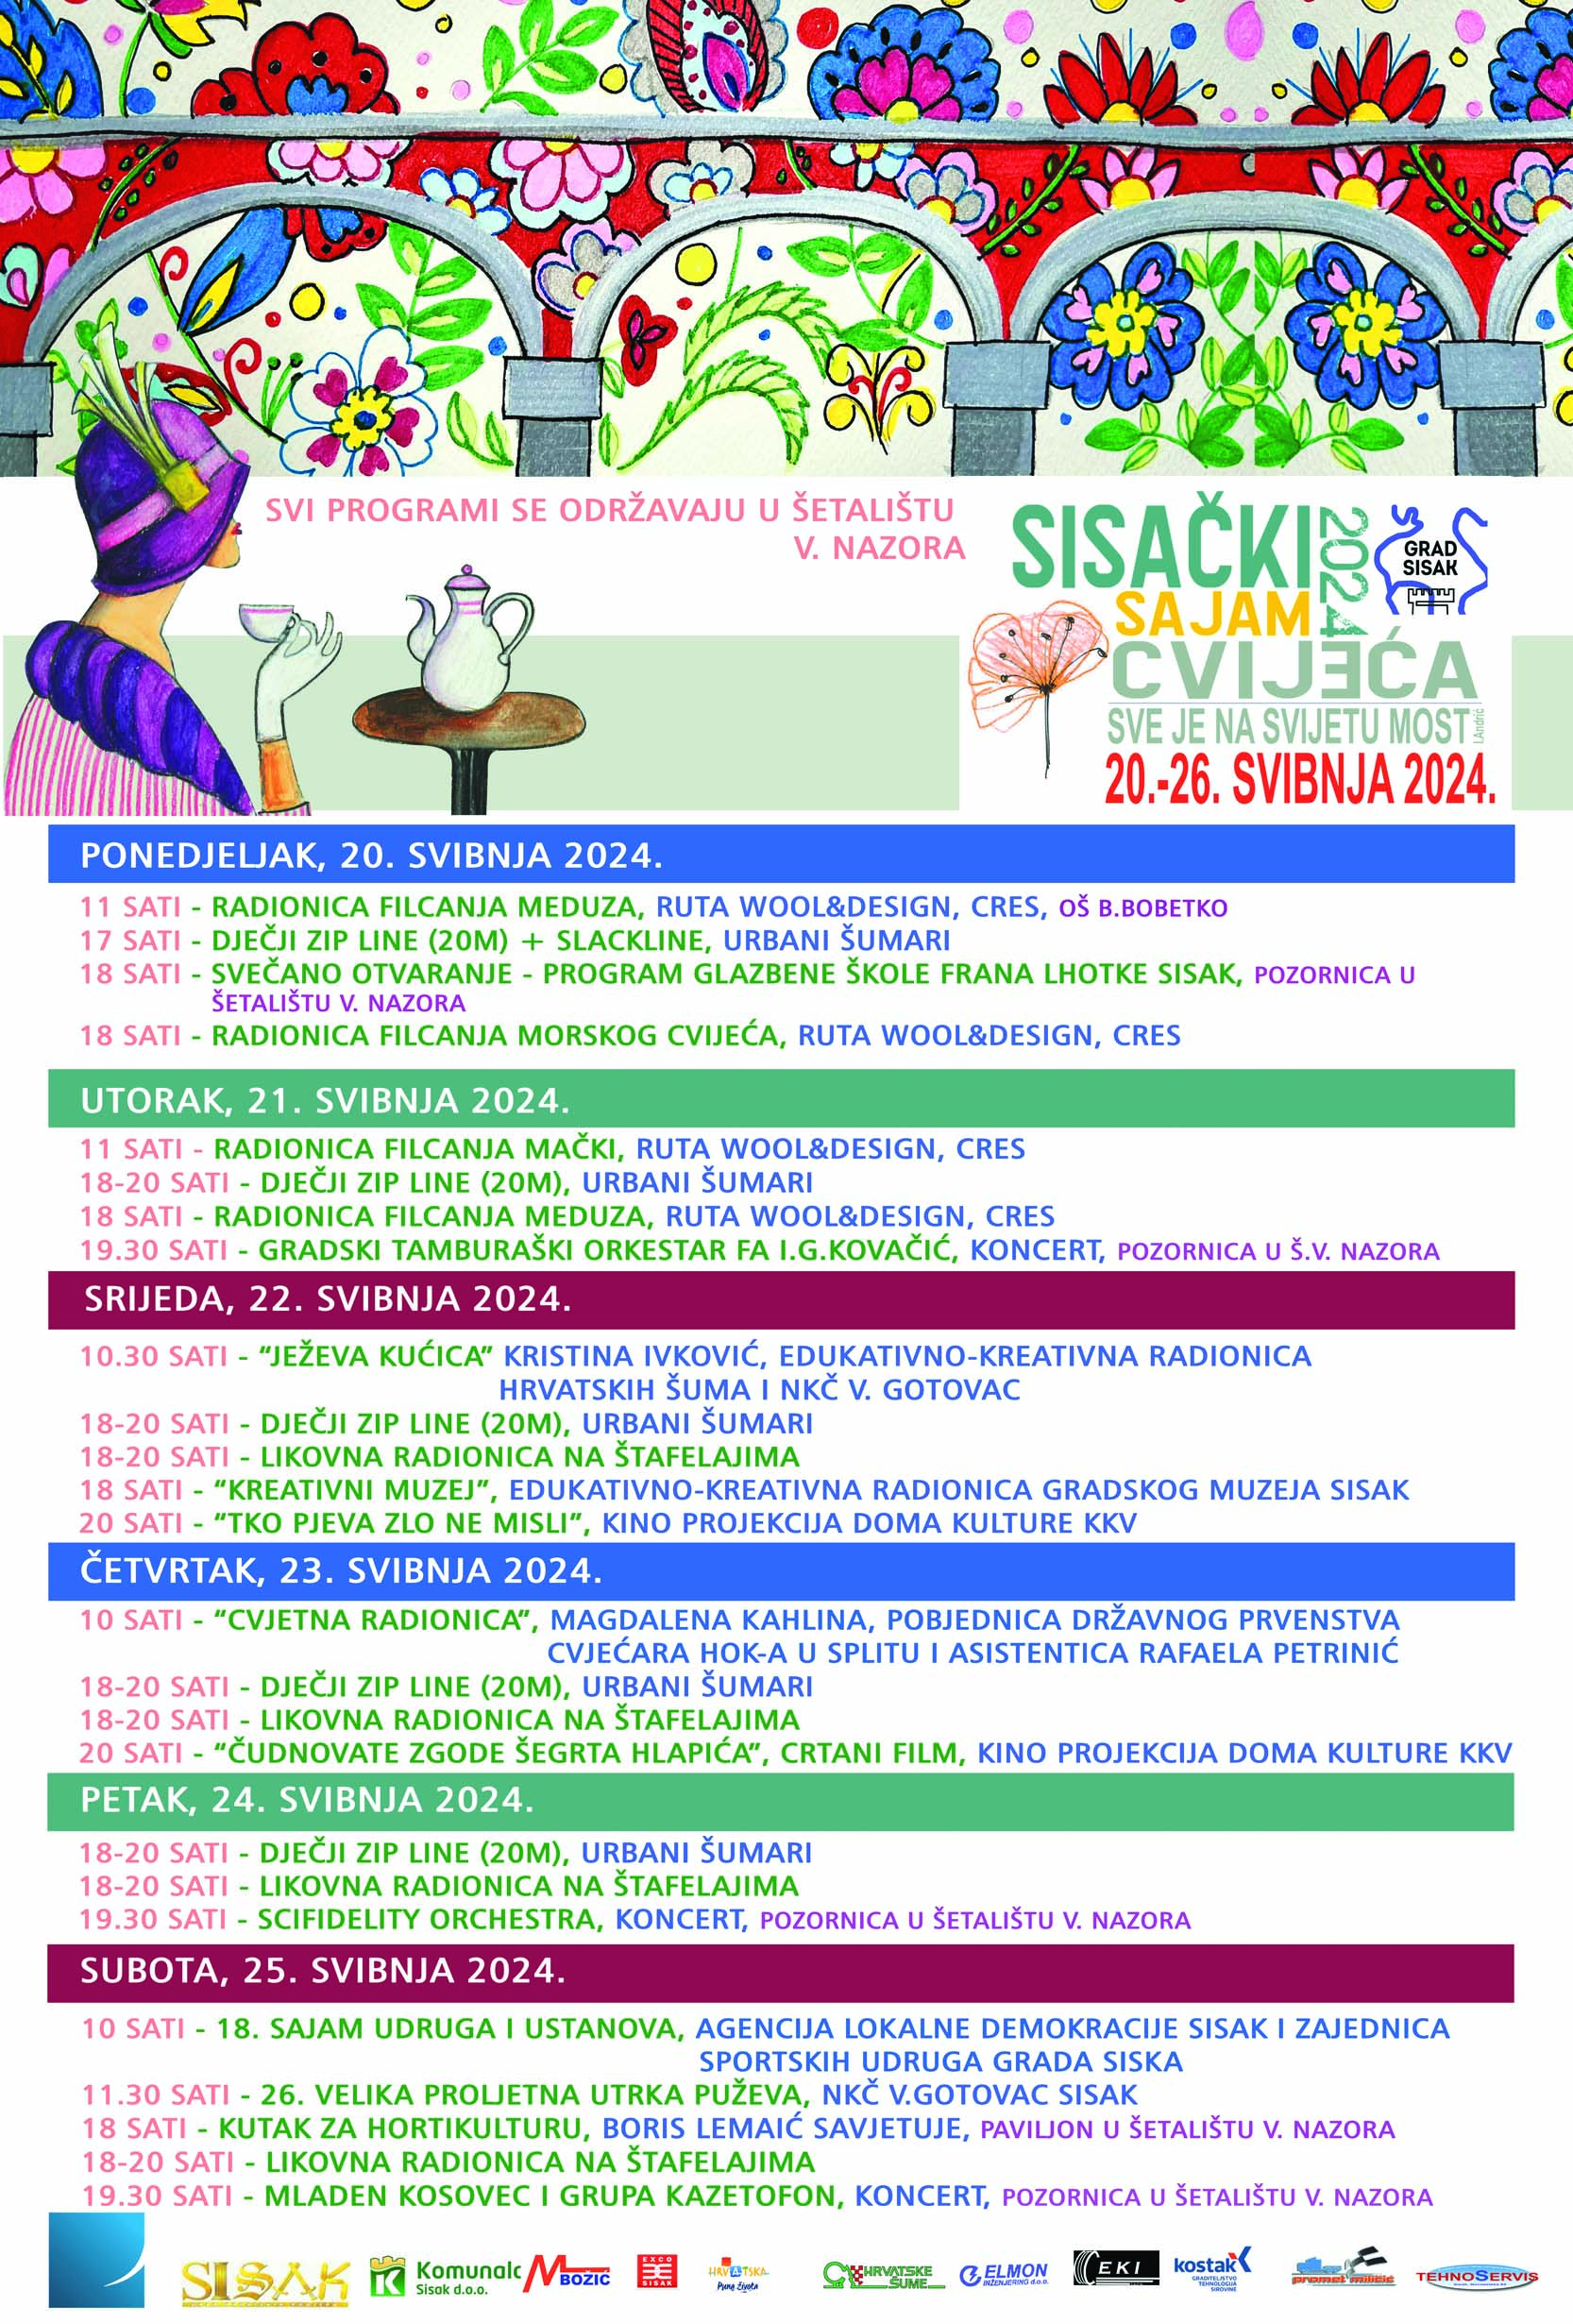 You are currently viewing Sisački sajam cvijeća 2024.